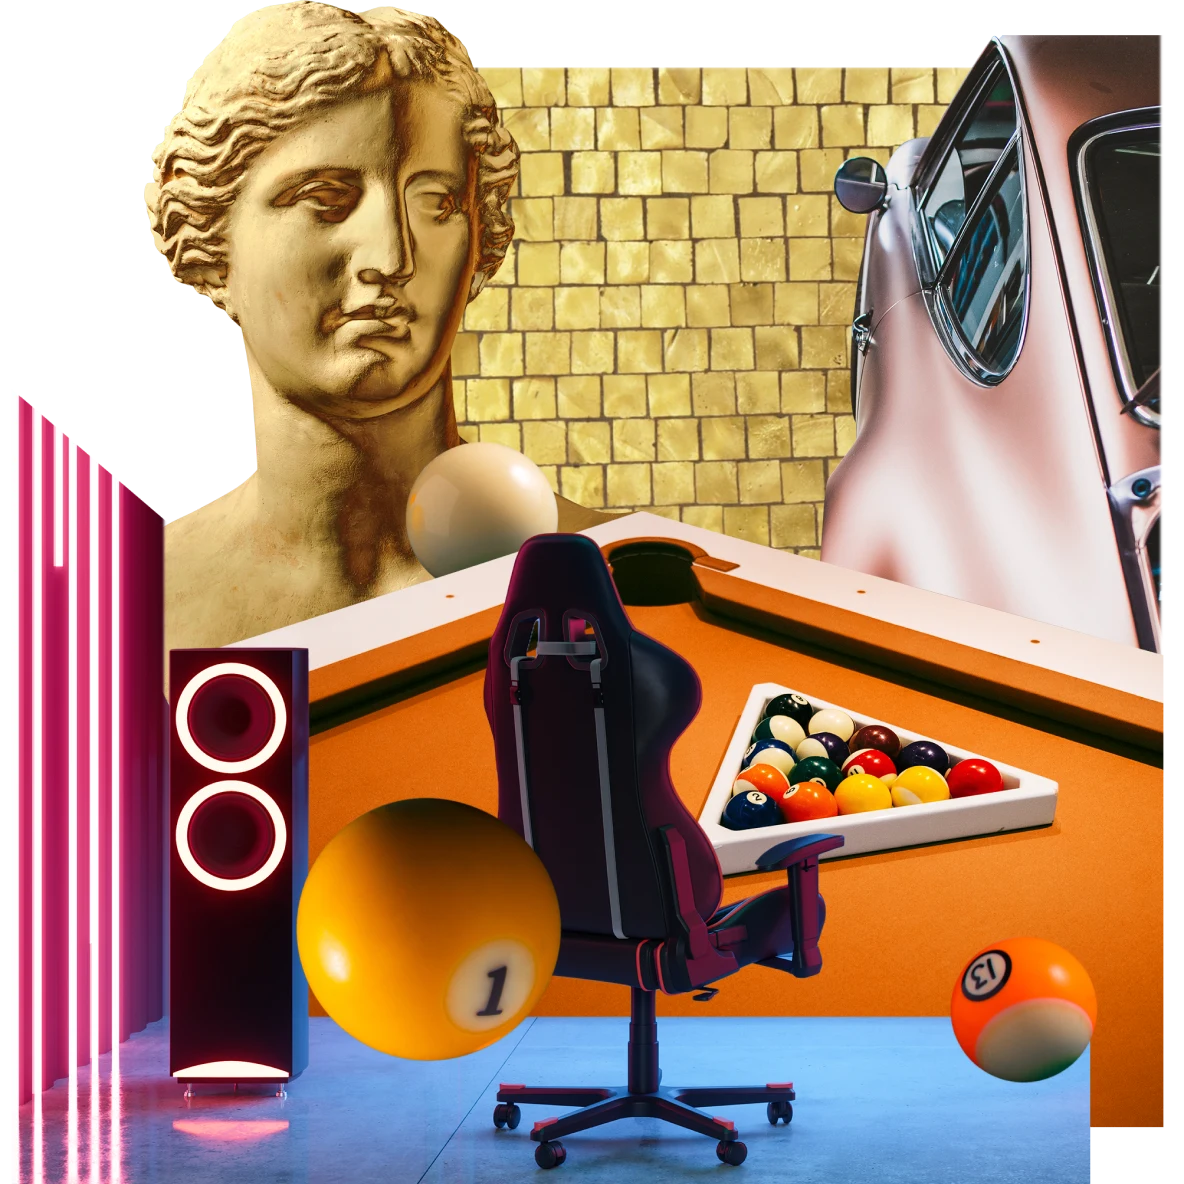 Eine Collage mit Gegenständen zum Thema Spiele. Eine römische Büste in Gold, ein tiefroter Bürostuhl, ein orangefarbener Billardtisch mit angeordneten Kugeln, Neon-Lautsprecher und ein Vintage-Auto in Altrosa vor einer goldenen Steinwand.